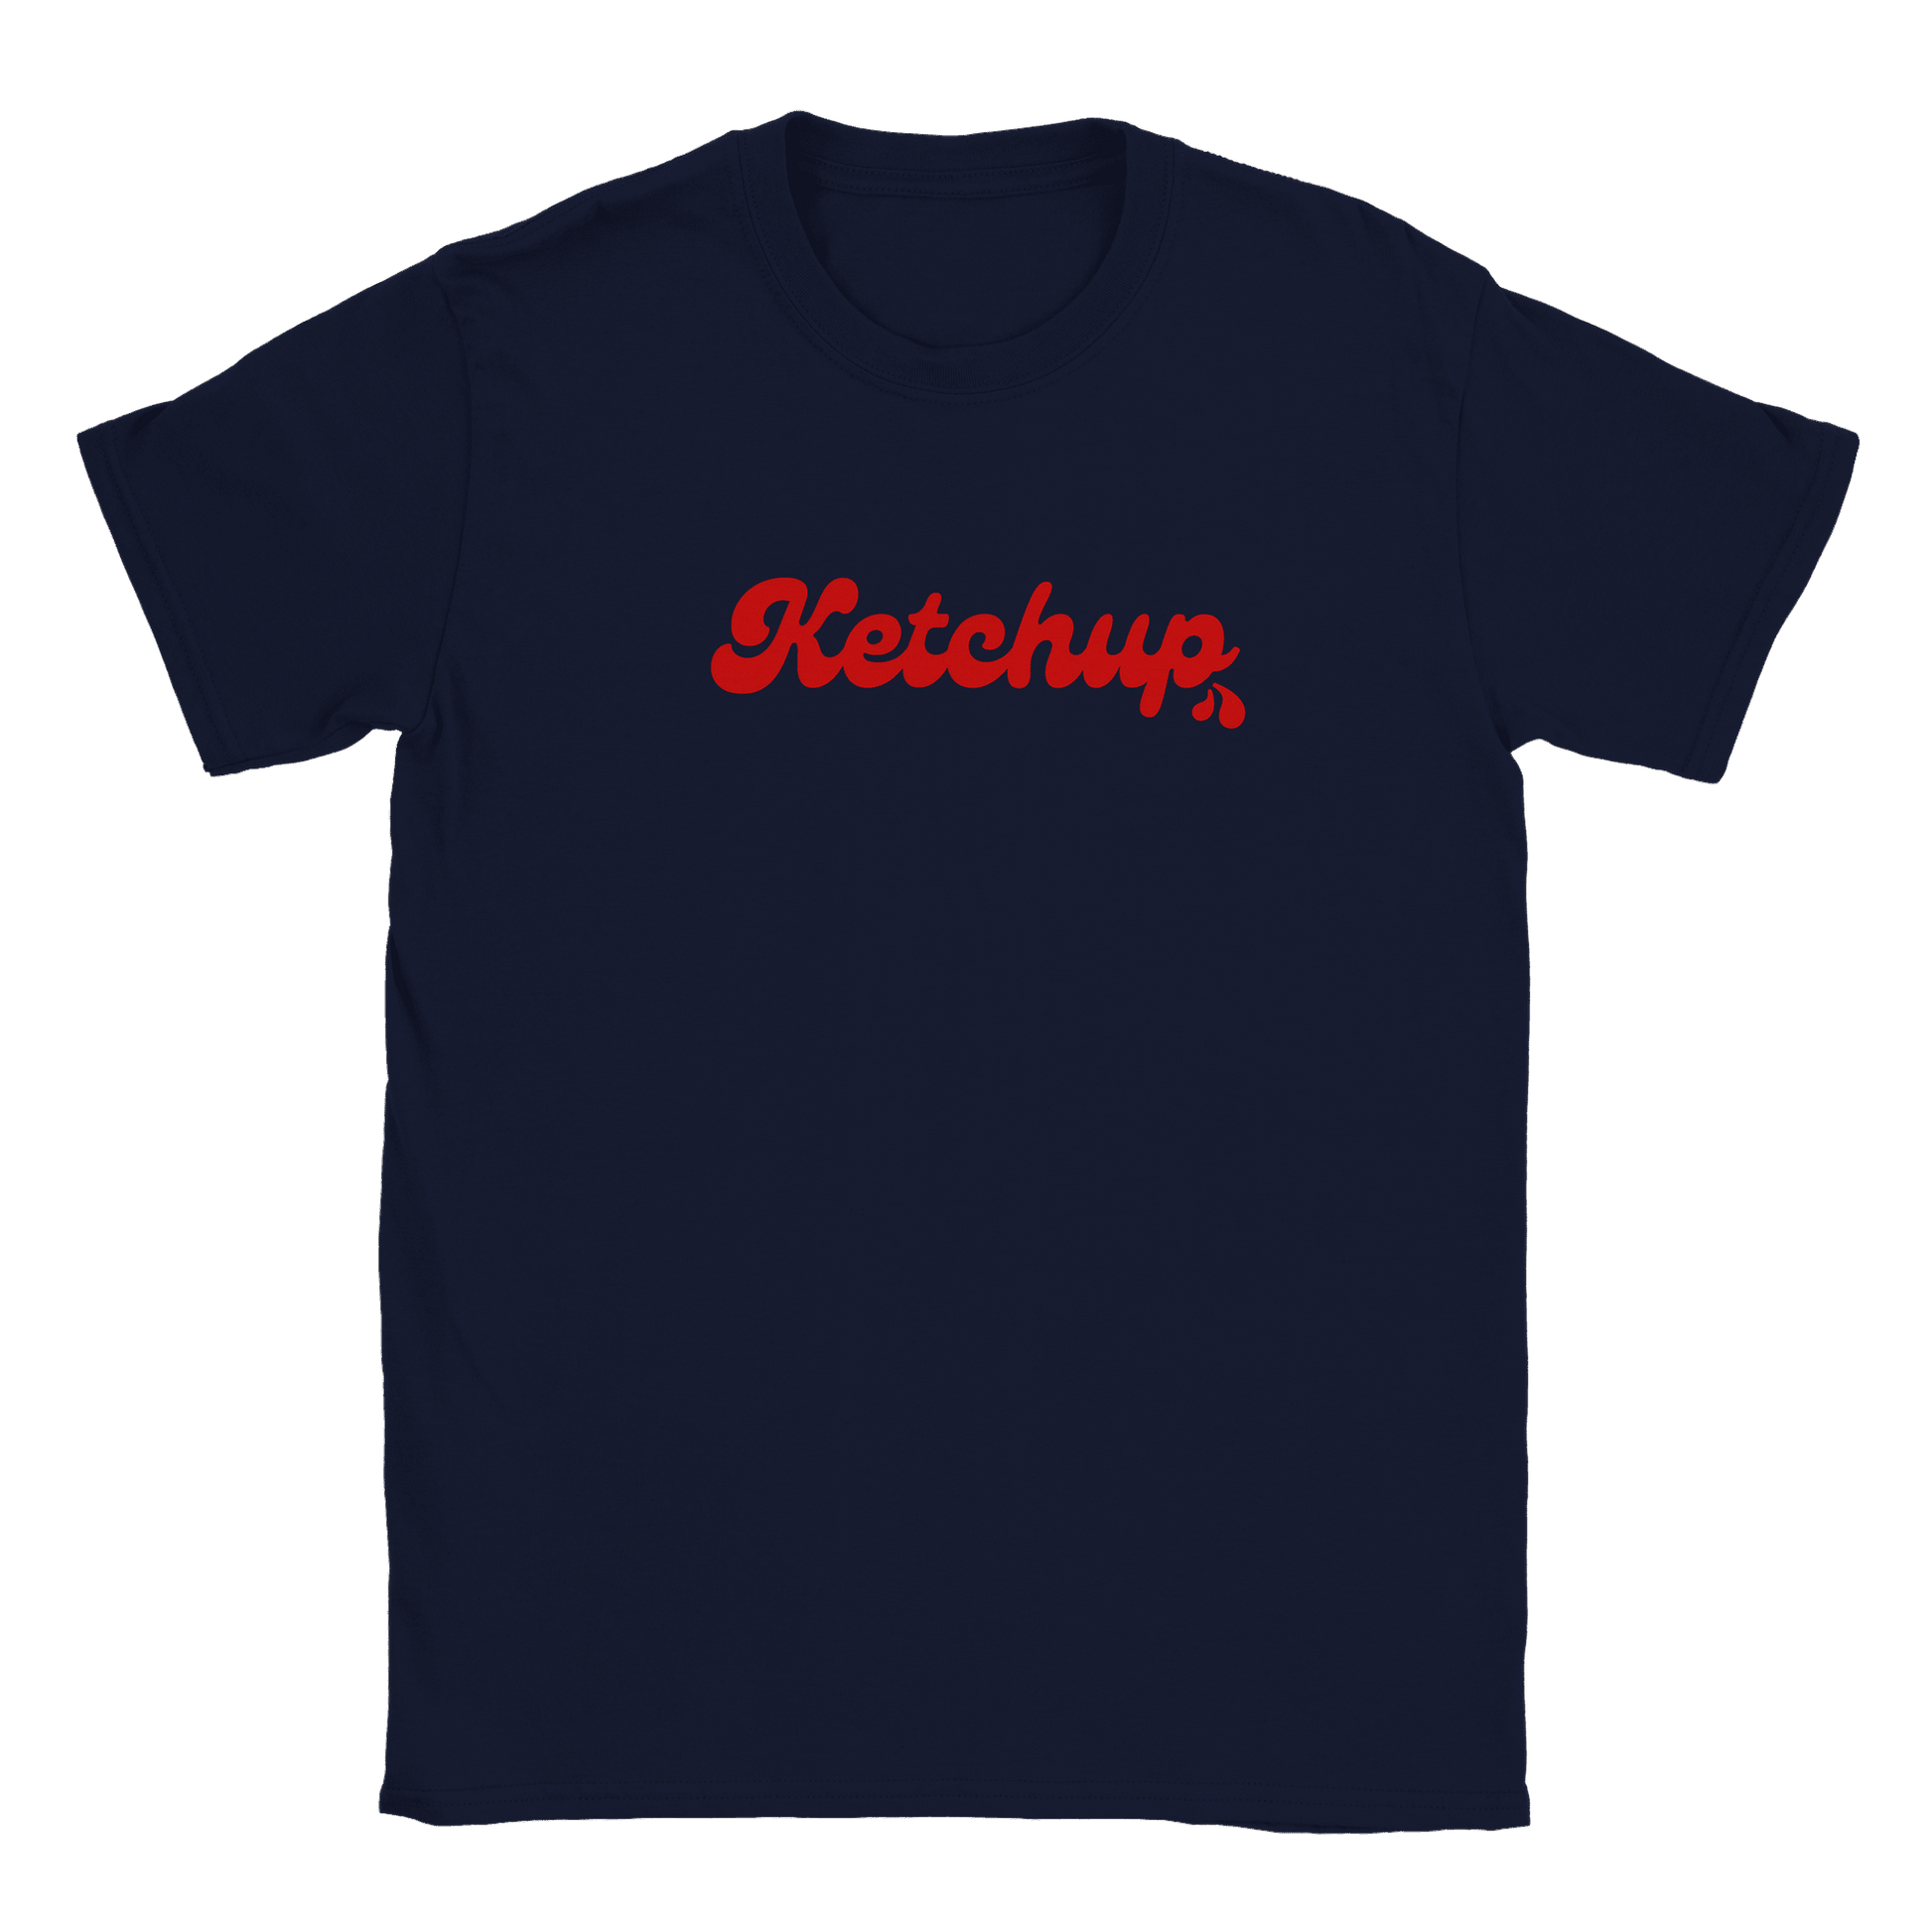 Ketchup - T-shirt Navy